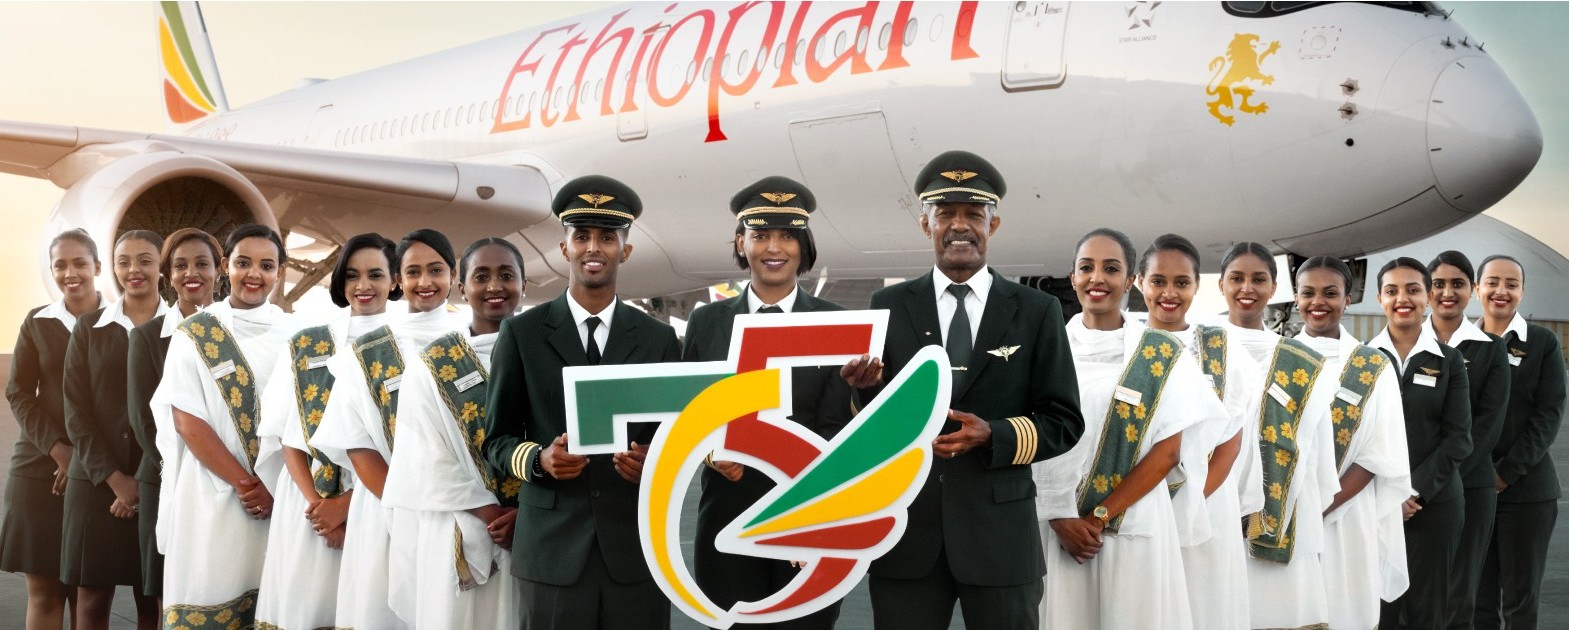 ETHIOPIA-FLIGHT.jpg